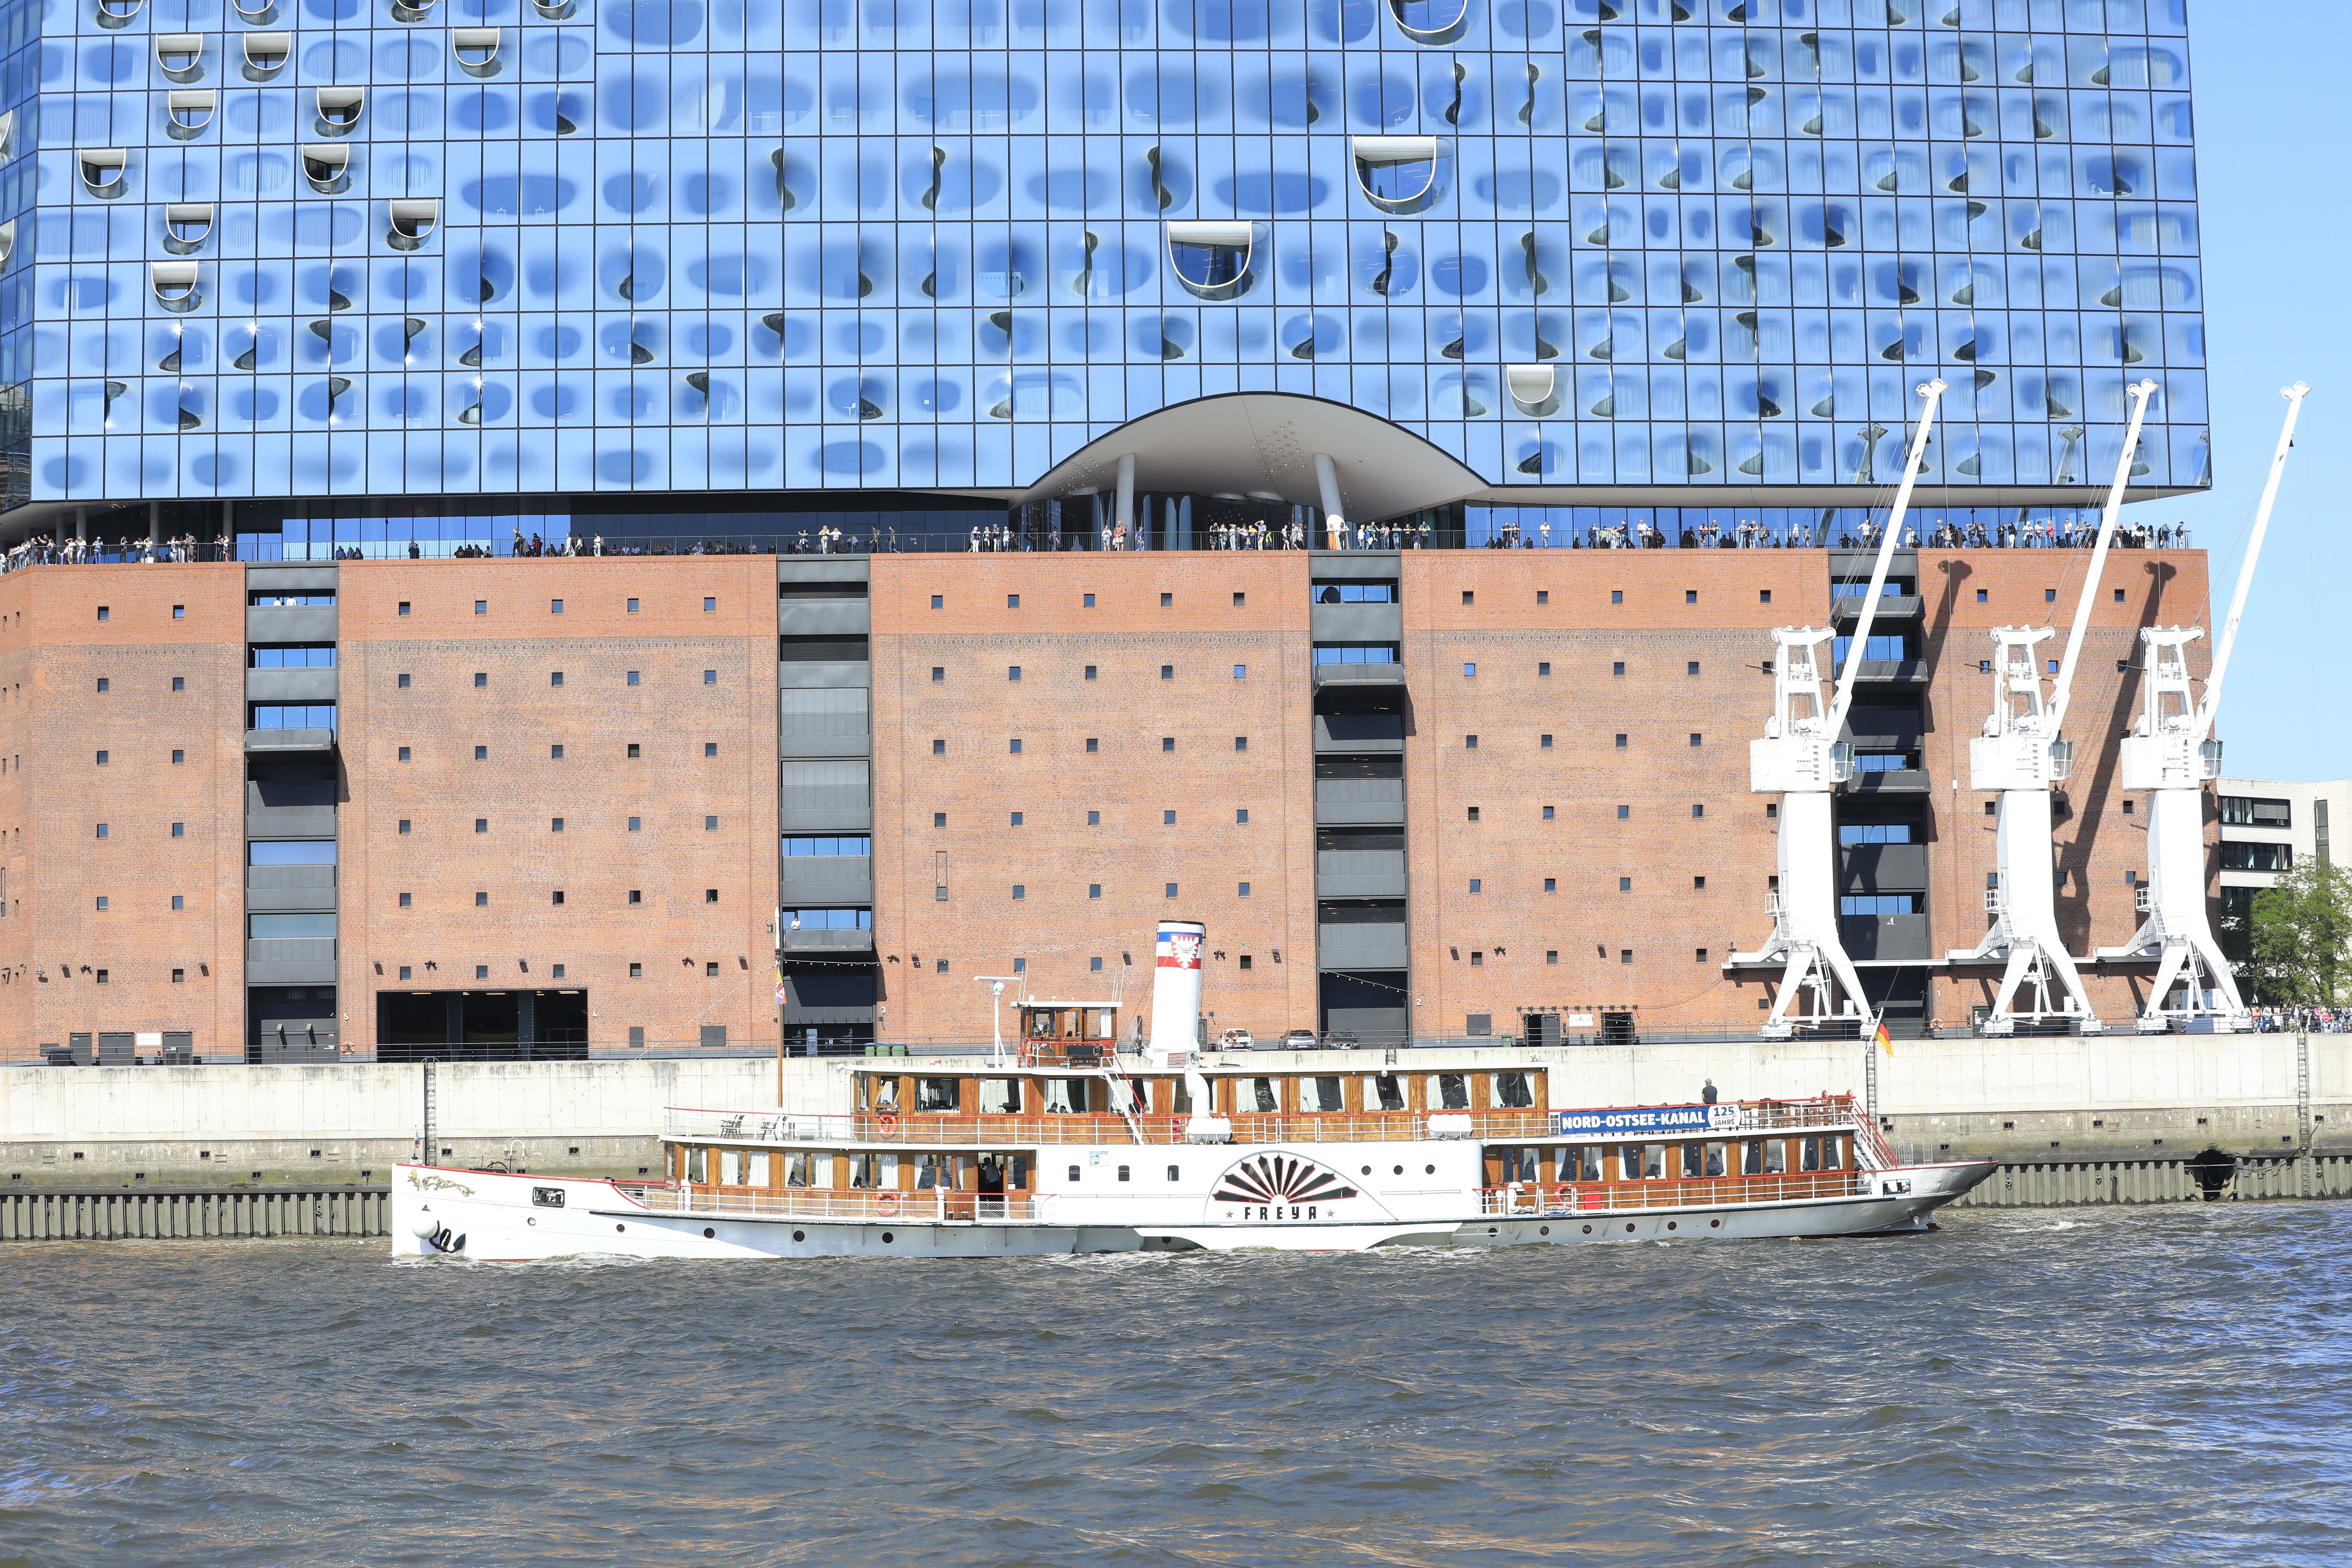 Hafengeburtstag Hamburg 2024